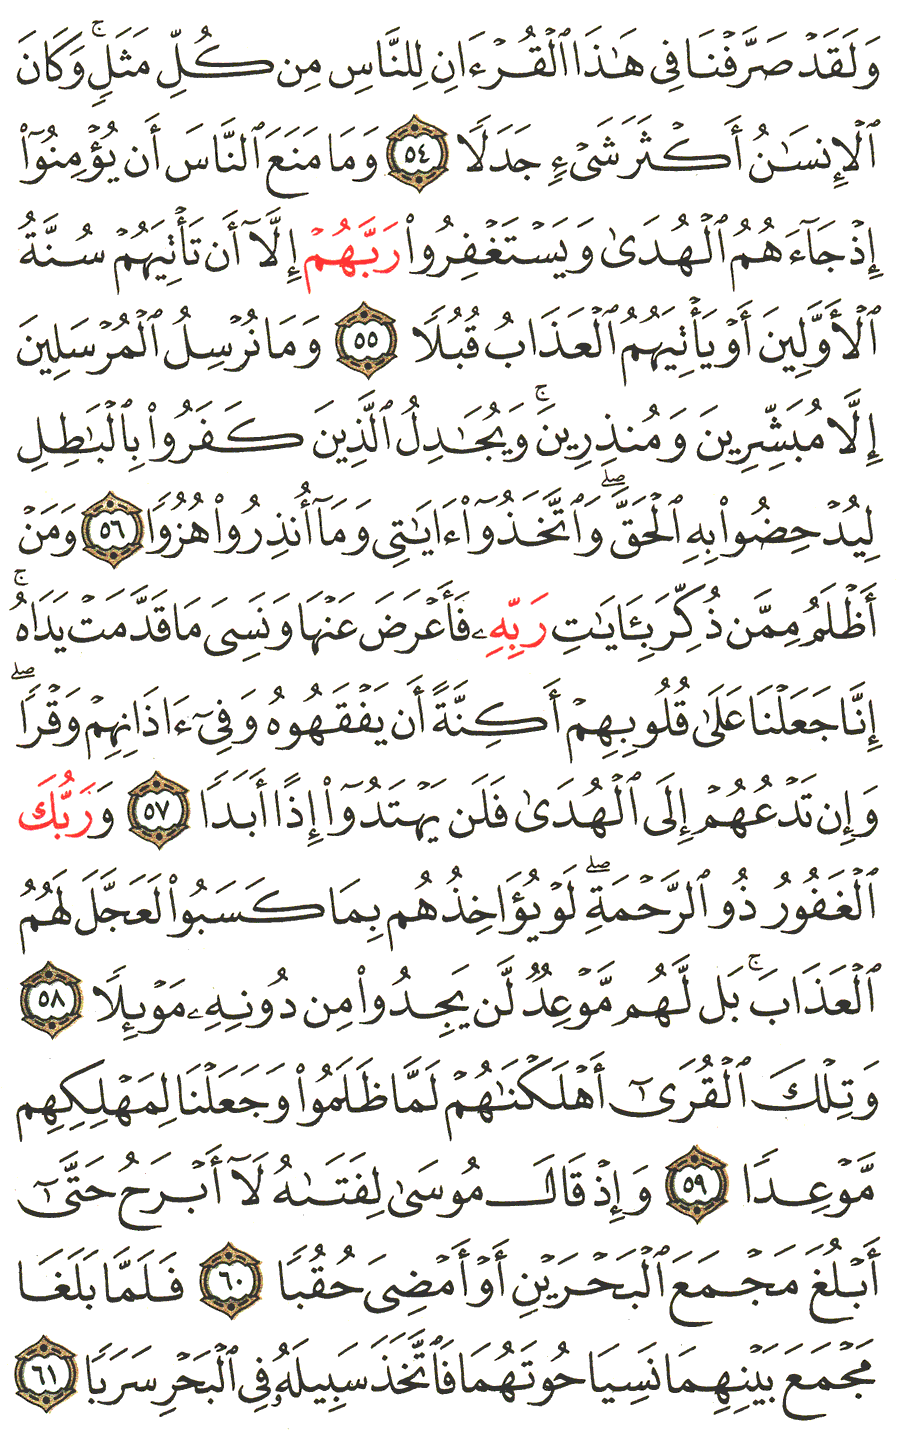 الصفحة 300 من القرآن الكريم